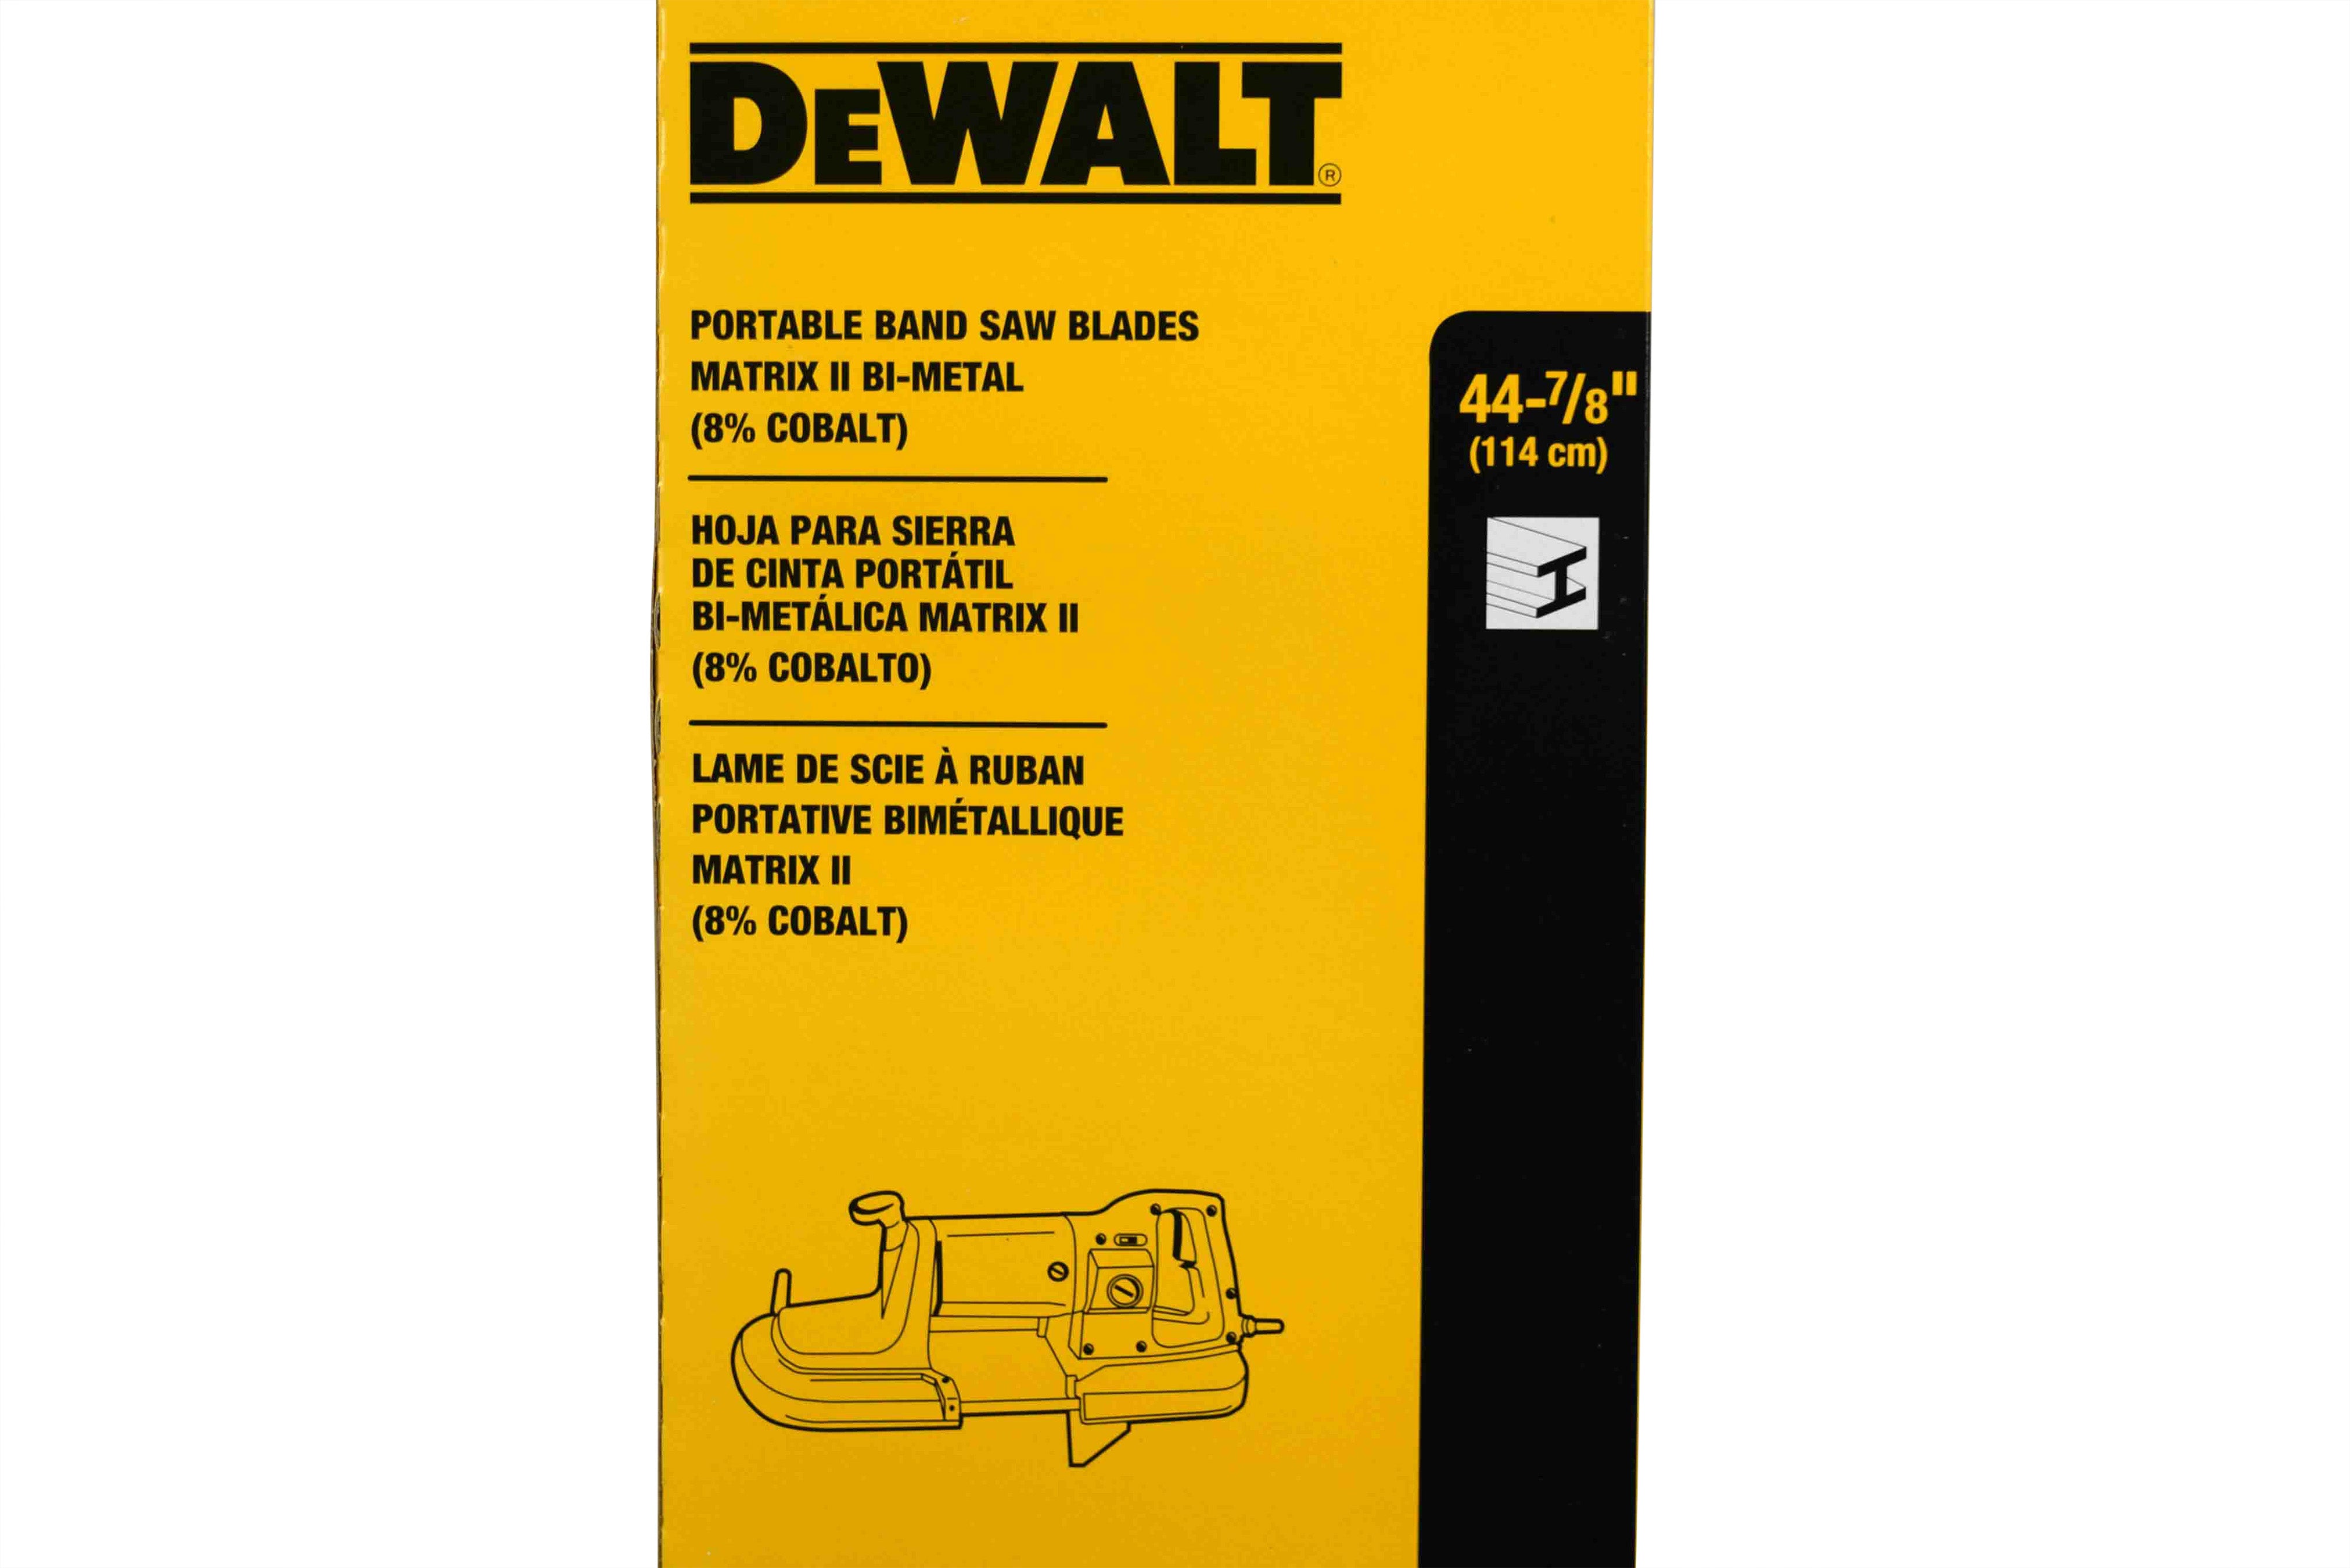 DEWALT DW3983 .020-by-44-7/8-Inch 18 TPI Portable Band Saw Blade, 3-Pack